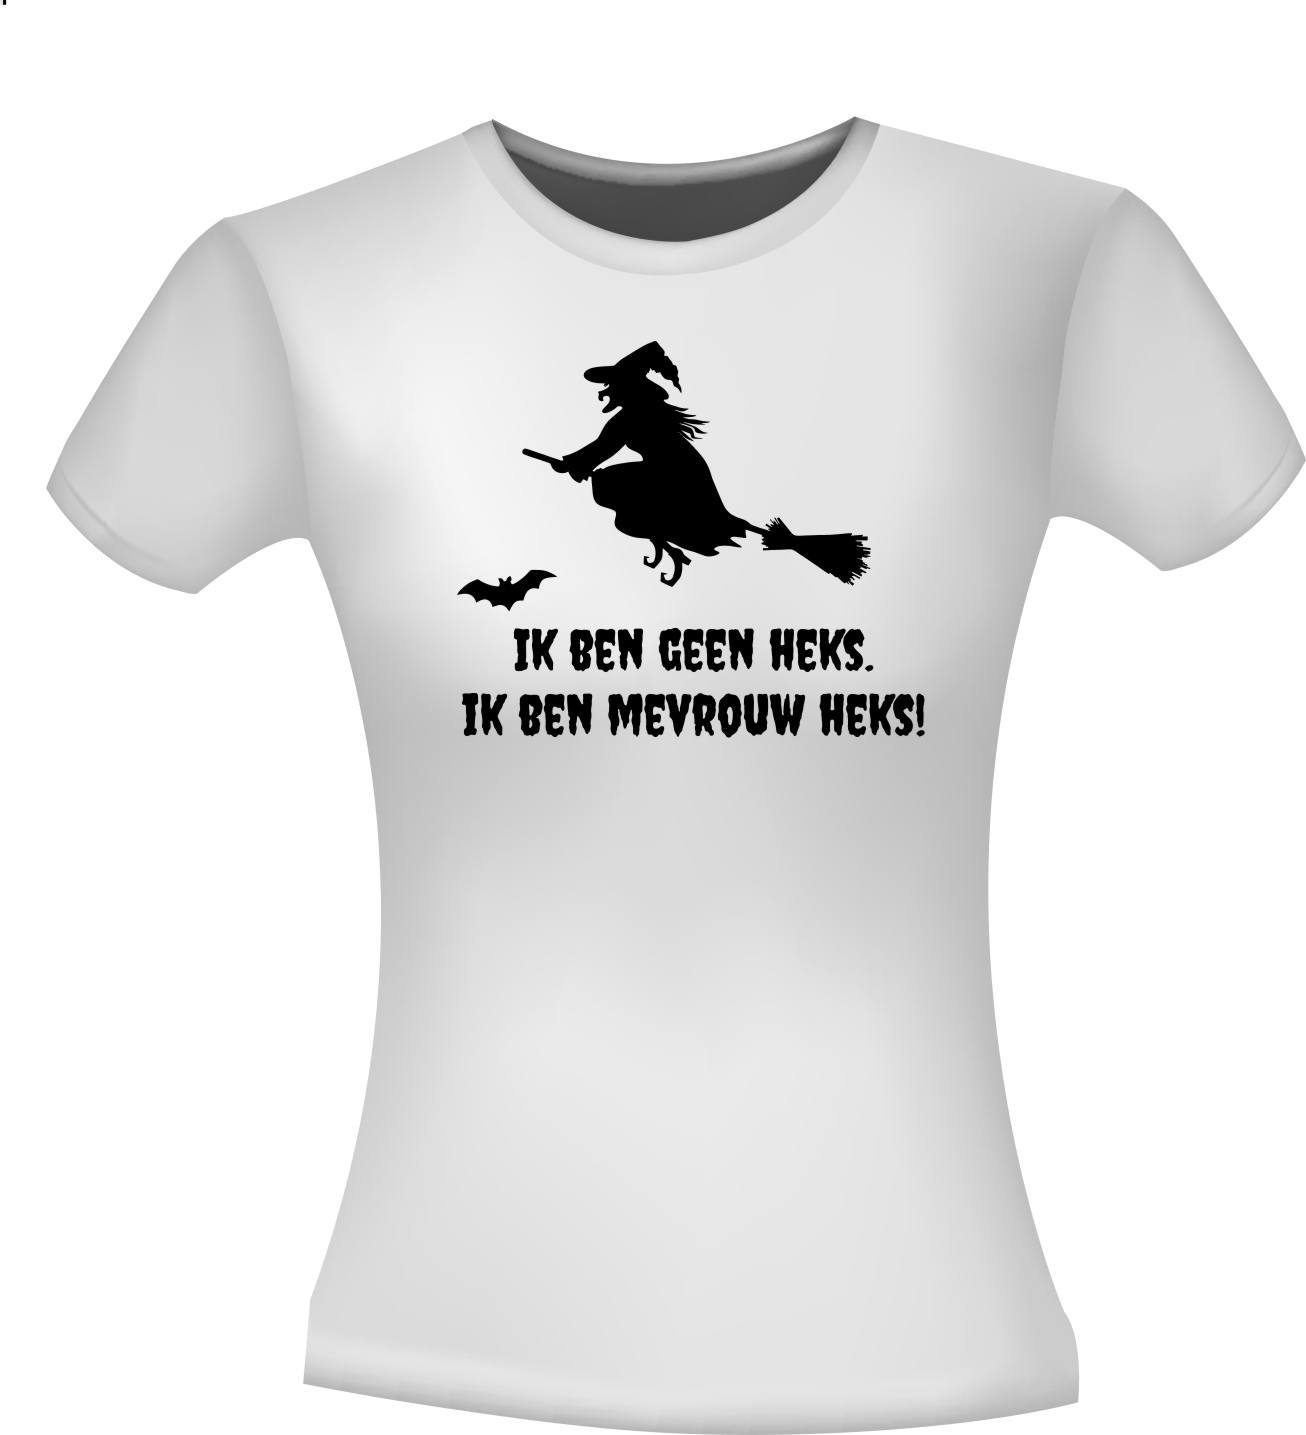 T-shirt ik ben geen heks ik ben mevrouw heks!